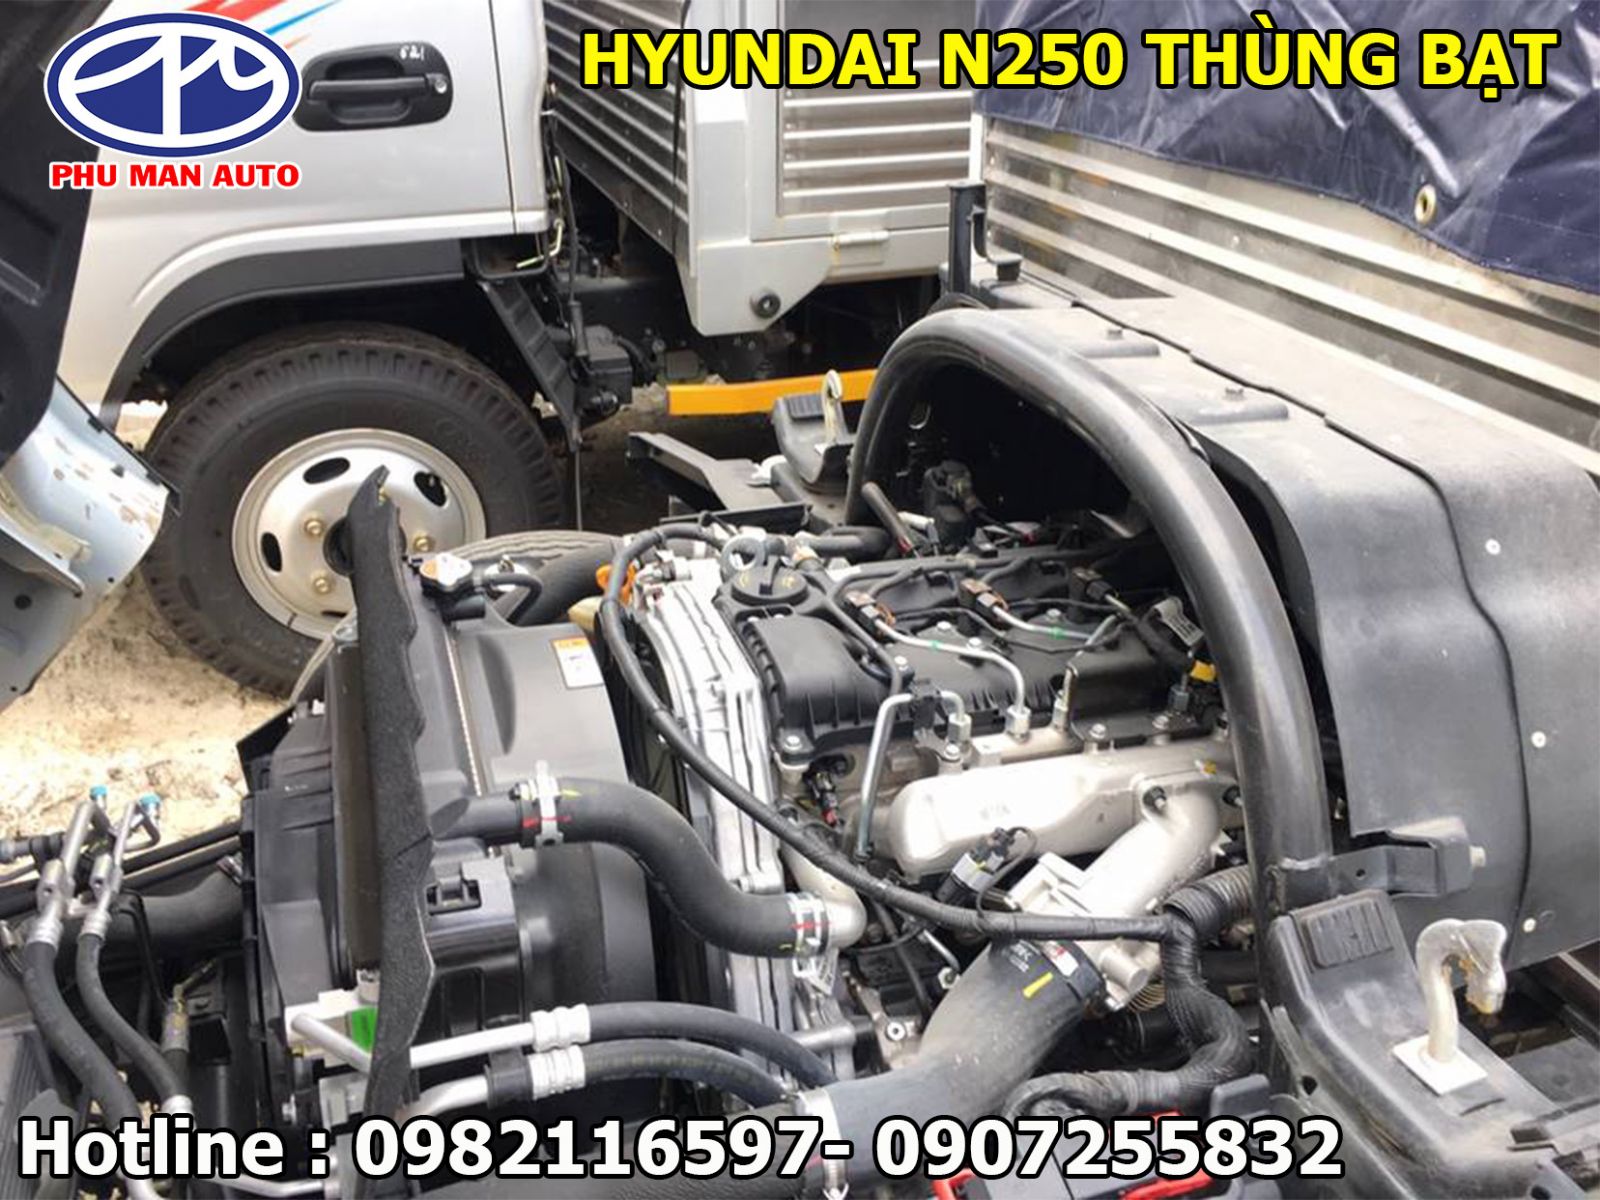 Xe tải Hyundai N250SL tải 2 tấn 4 thùng dài - Hyundai N250 thùng 4 met 4 - giá xe tải Hyundai N250